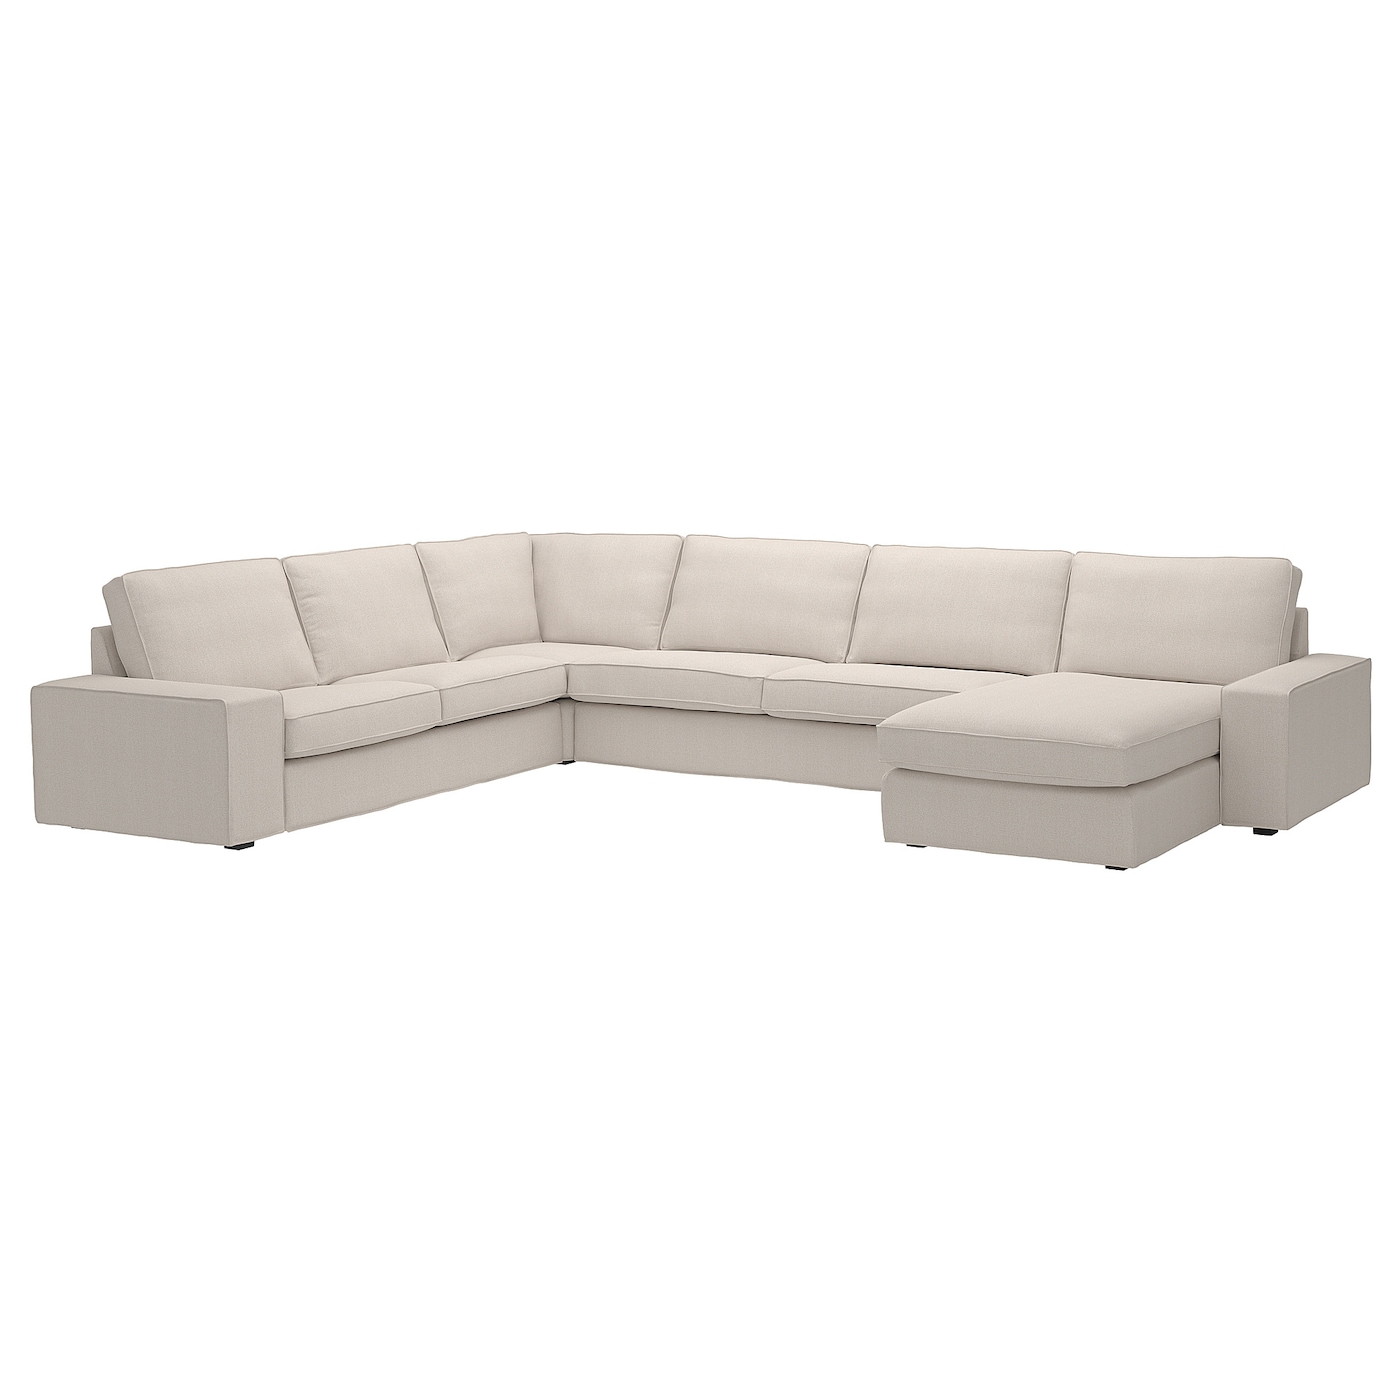 6-местный угловой диван и кушетка - IKEA KIVIK, 83x60x257/387см, серый/светло-серый, КИВИК ИКЕА